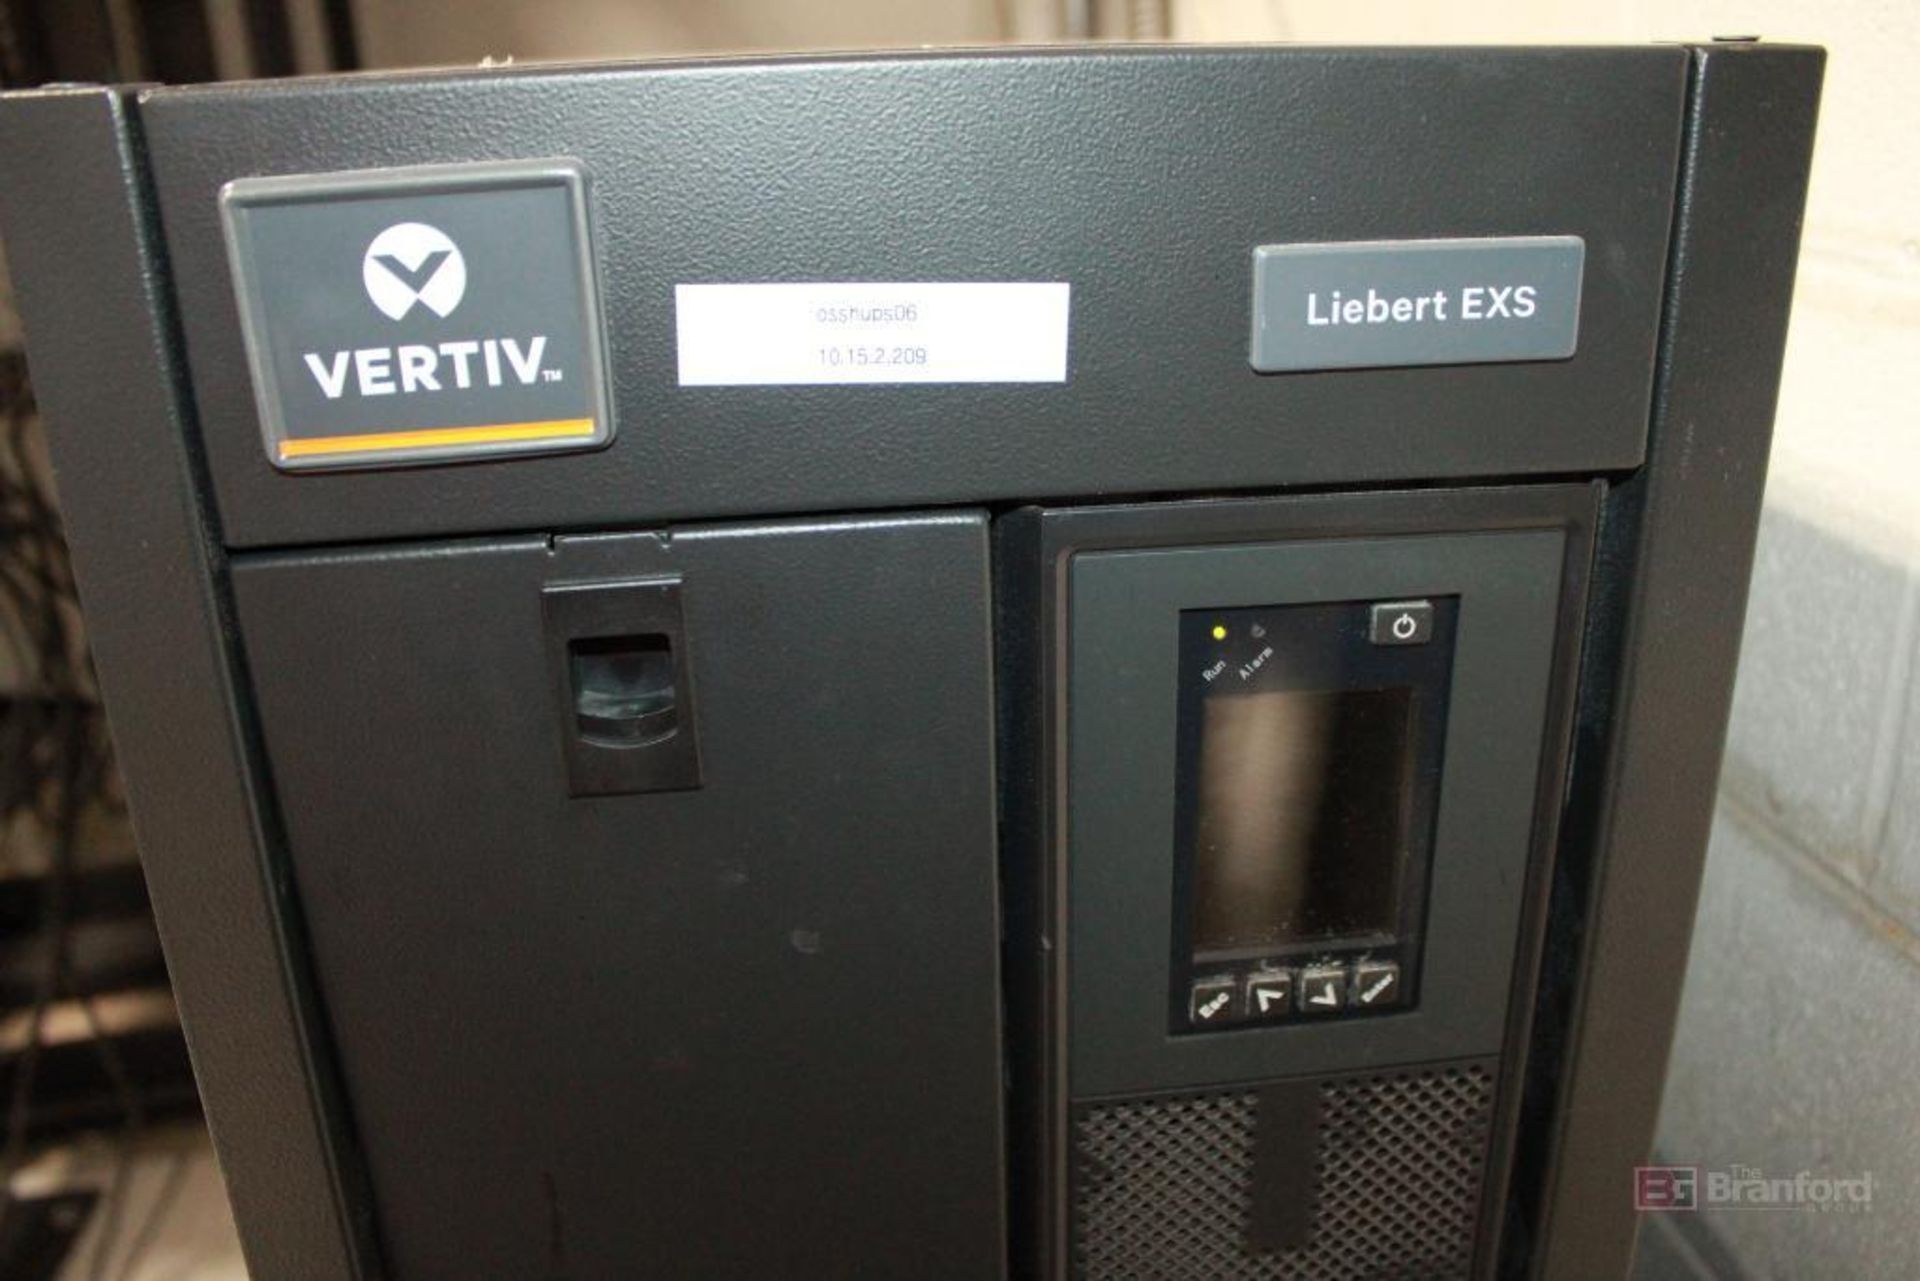 Vertiv Liebert EXS F1 Series - Image 2 of 4